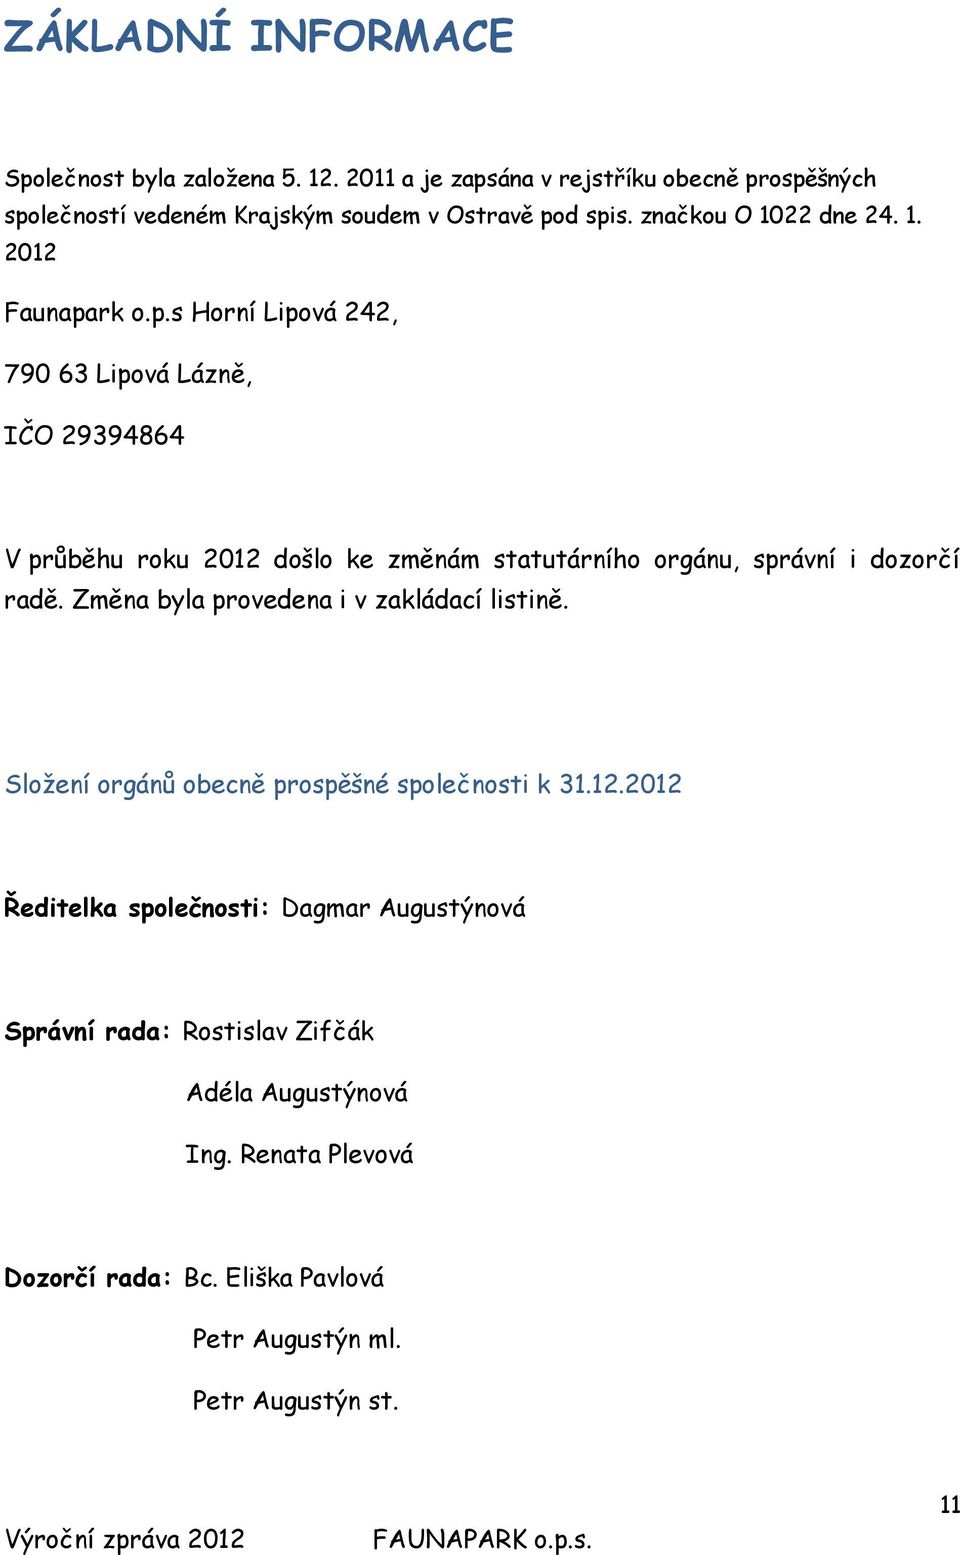 rk o.p.s Horní Lipová 242, 790 63 Lipová Lázně, IČO 29394864 V průběhu roku 2012 došlo ke změnám statutárního orgánu, správní i dozorčí radě.